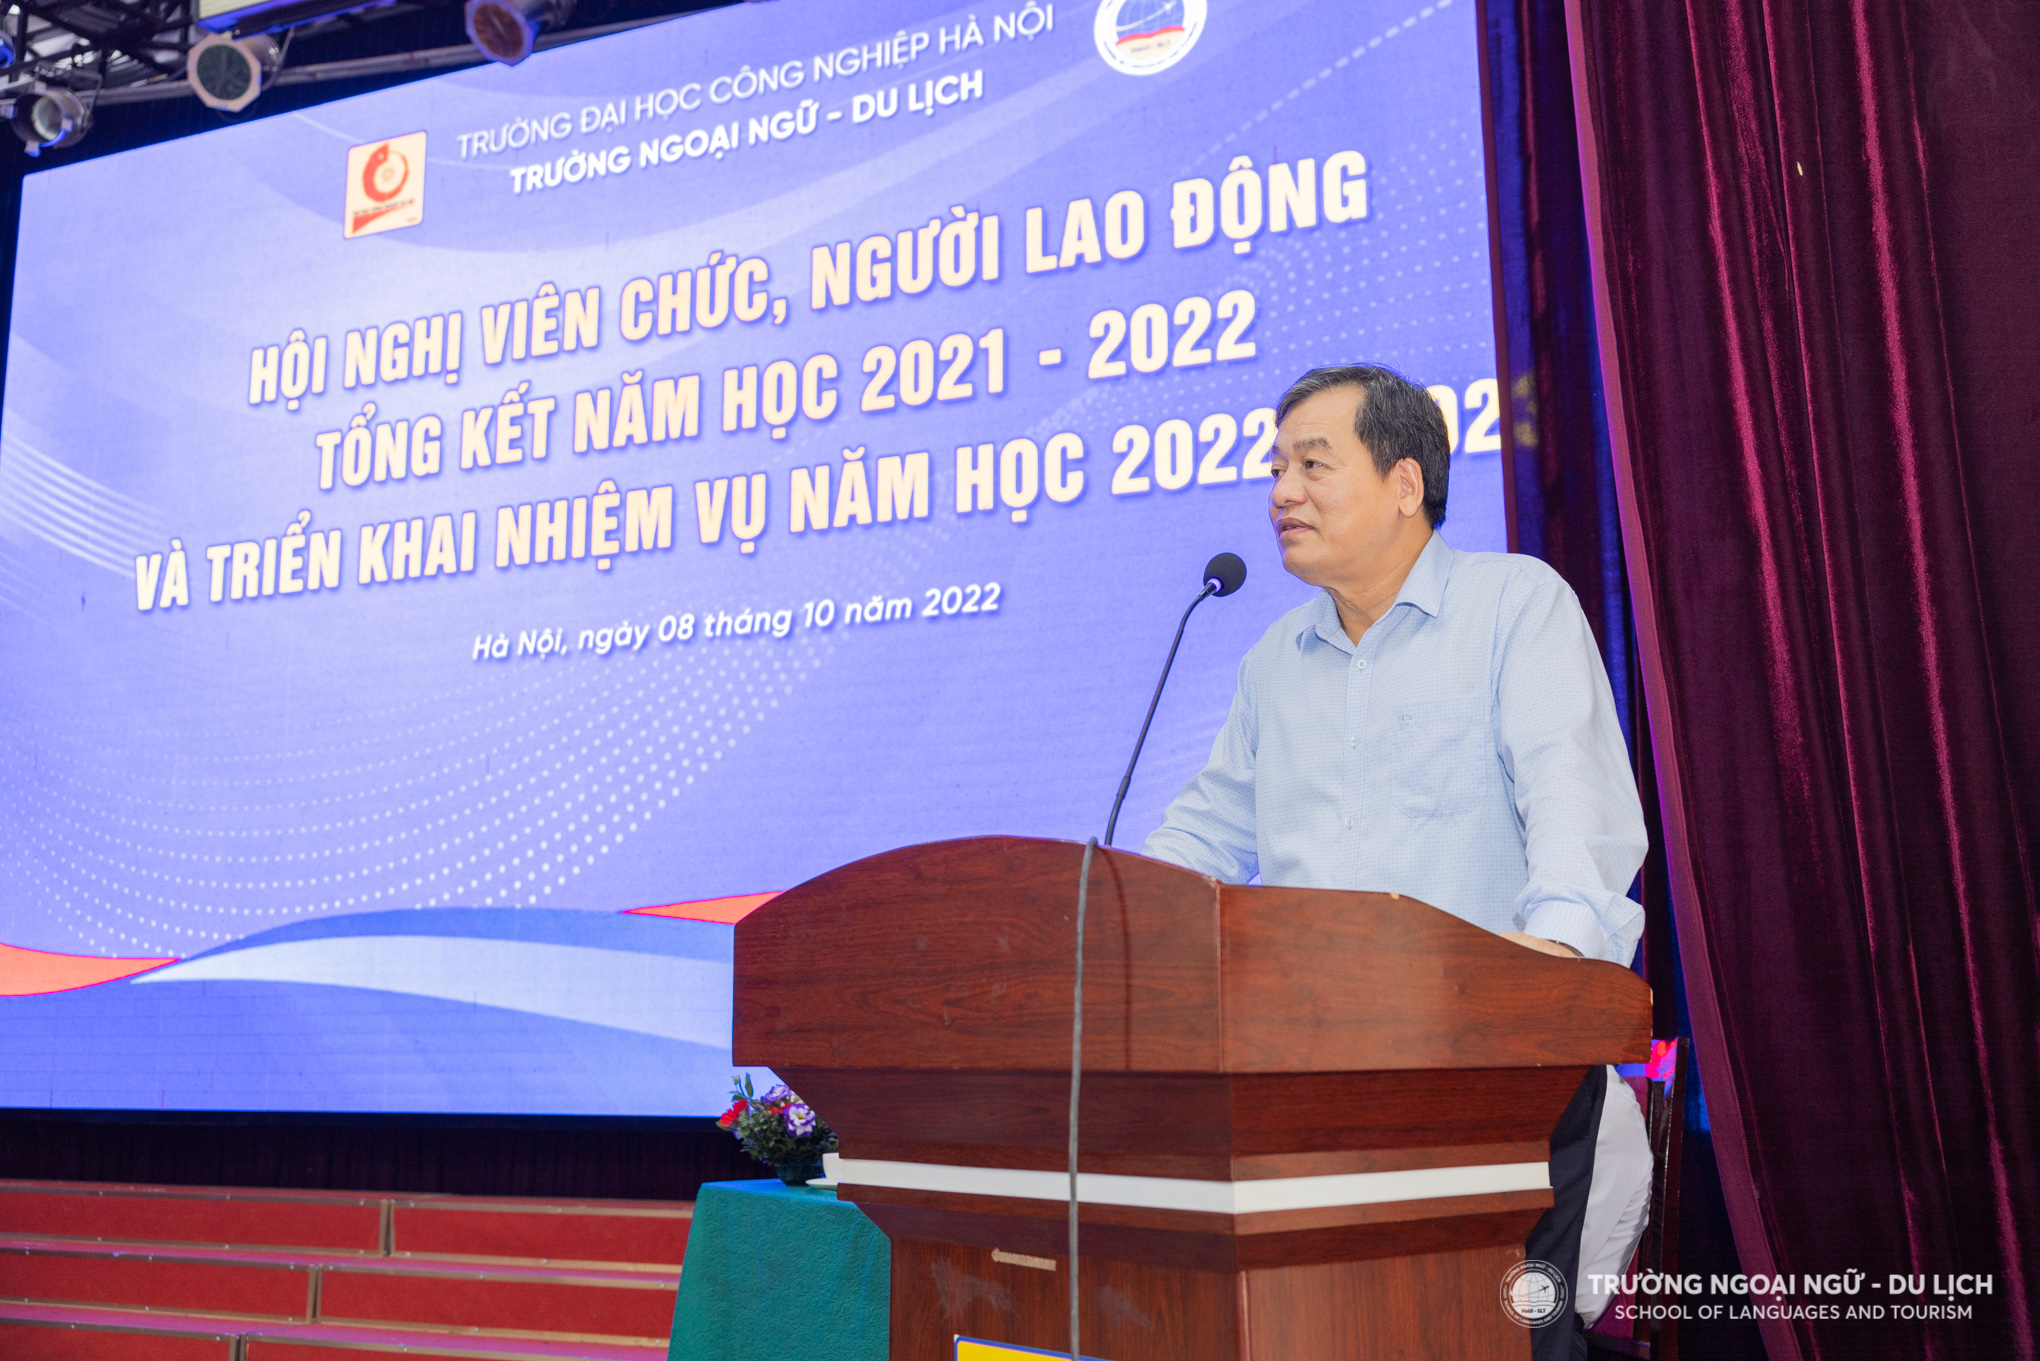 Hội nghị viên chức, người lao động, tổng kết năm học 2021-2022 và triển khai nhiệm vụ năm học 2022-2023